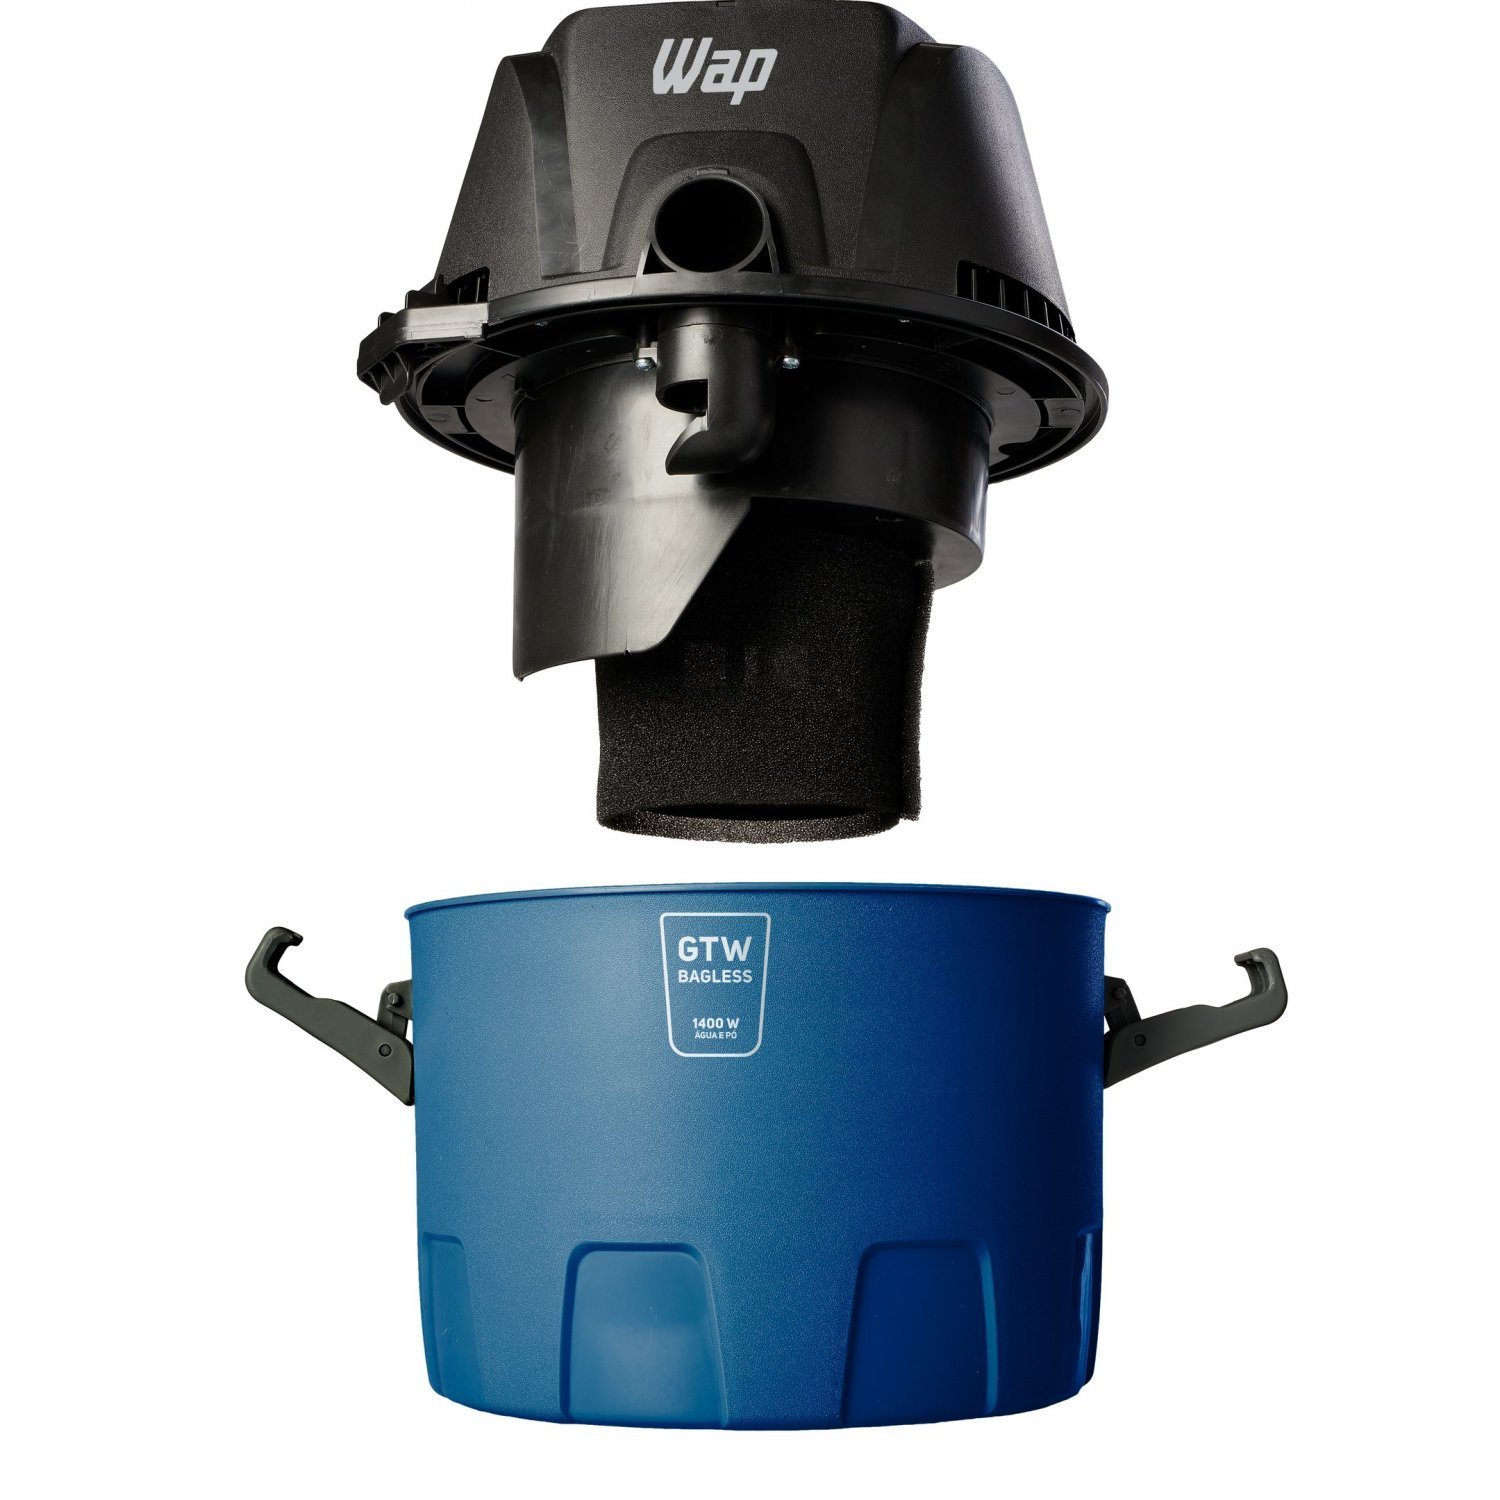 Aspirador de Água e Pó WAP GTW Bagless Alça Ergonômica 6L com Bocal de Sopro 1400W 127V Azul/Preto - 6